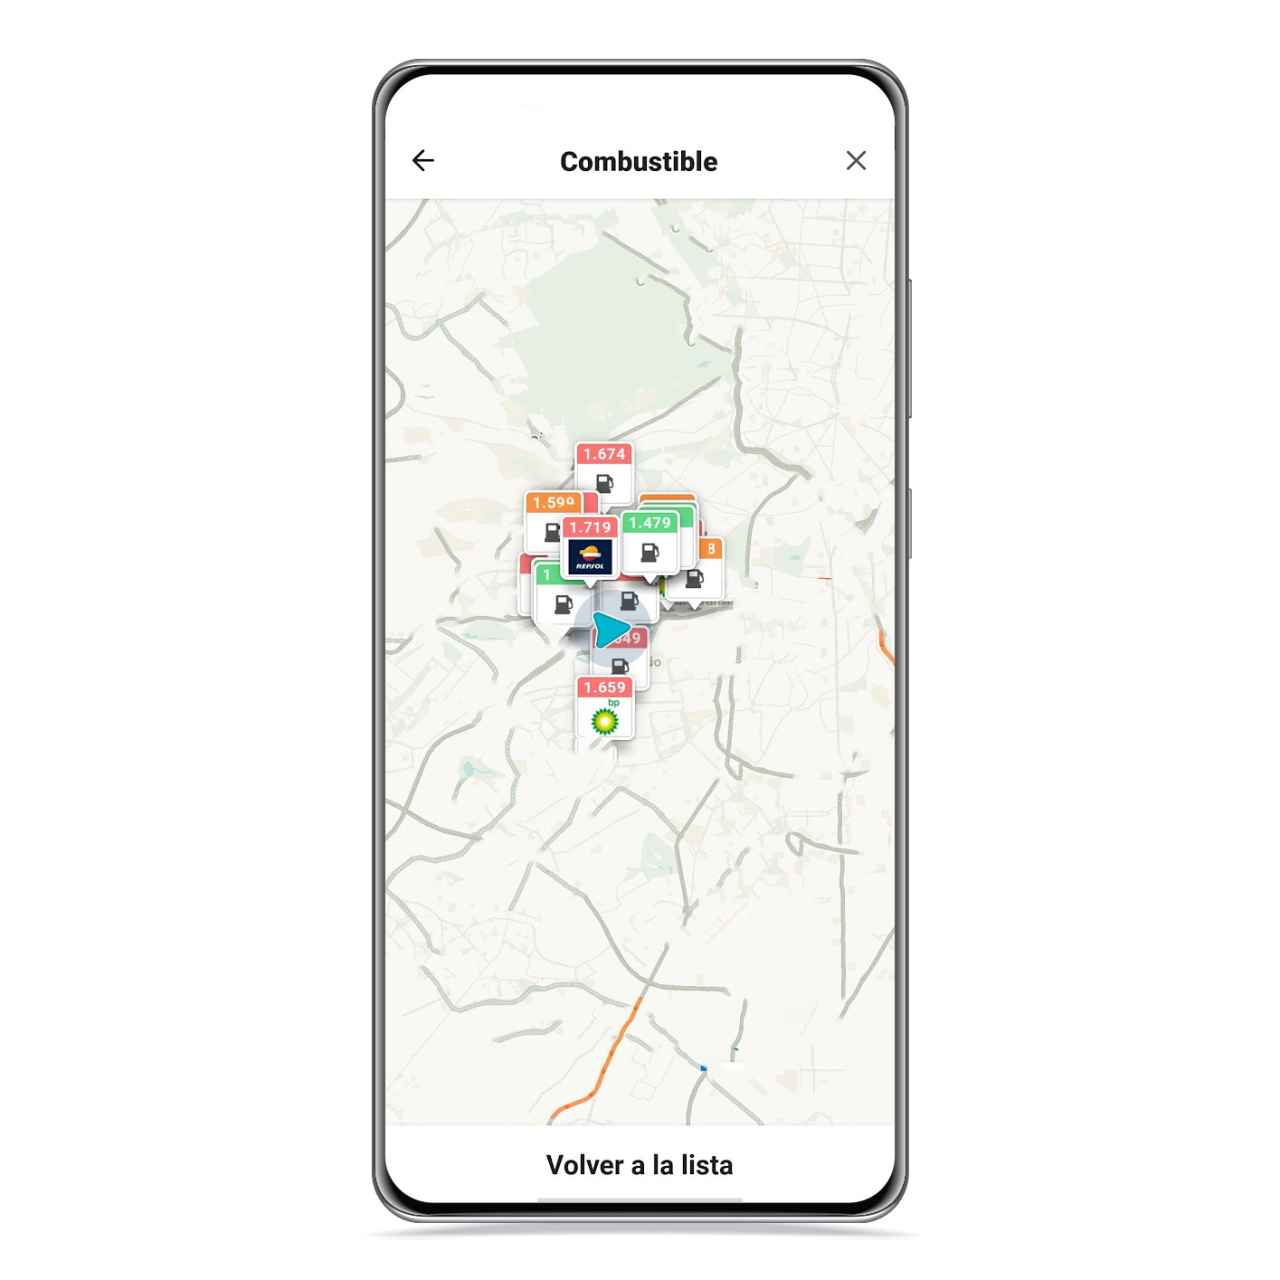 Mapa de gasolineras cercanas en Waze